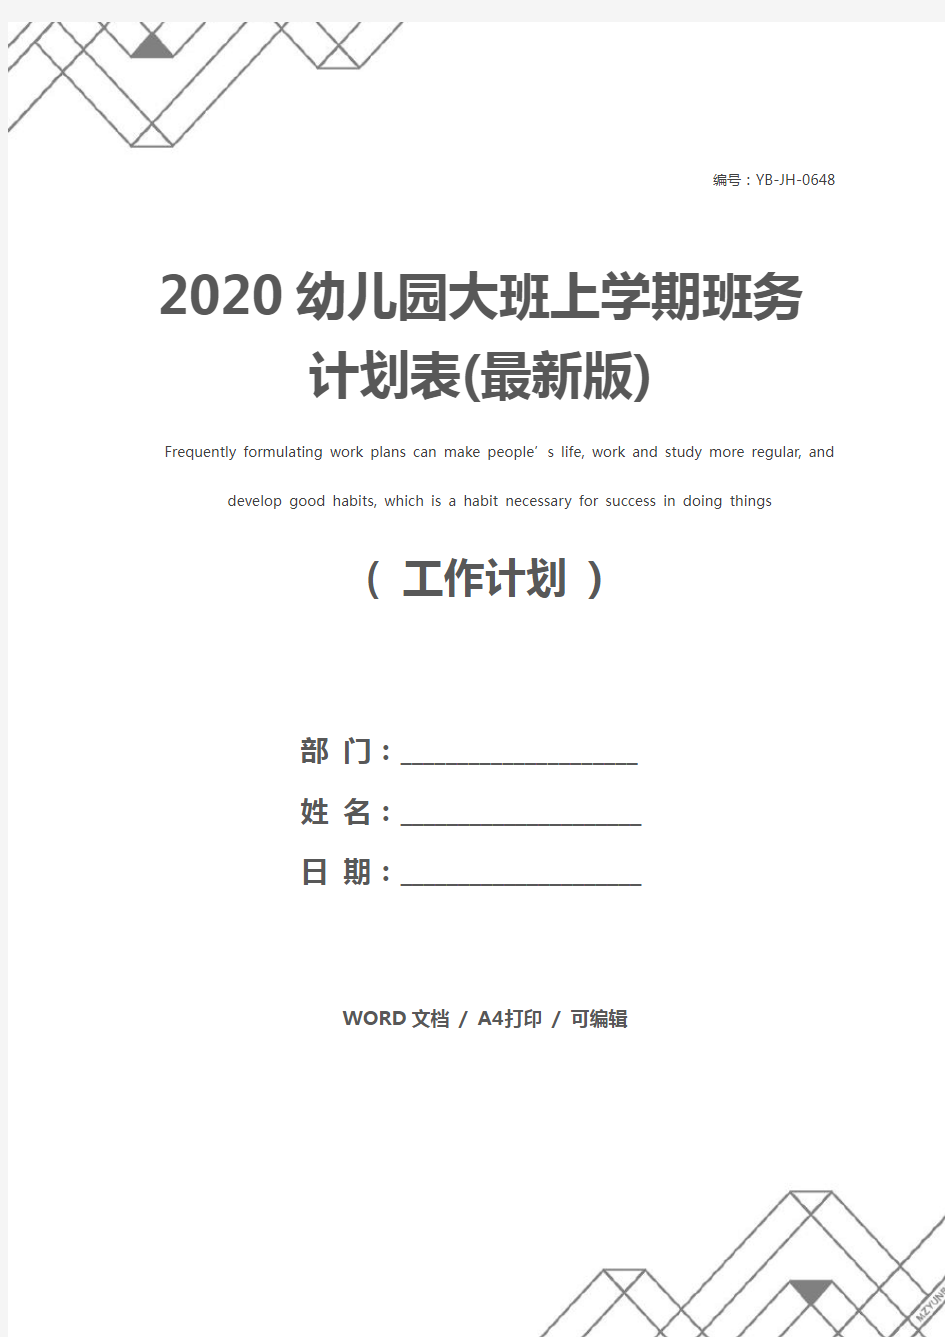 2020幼儿园大班上学期班务计划表(最新版)